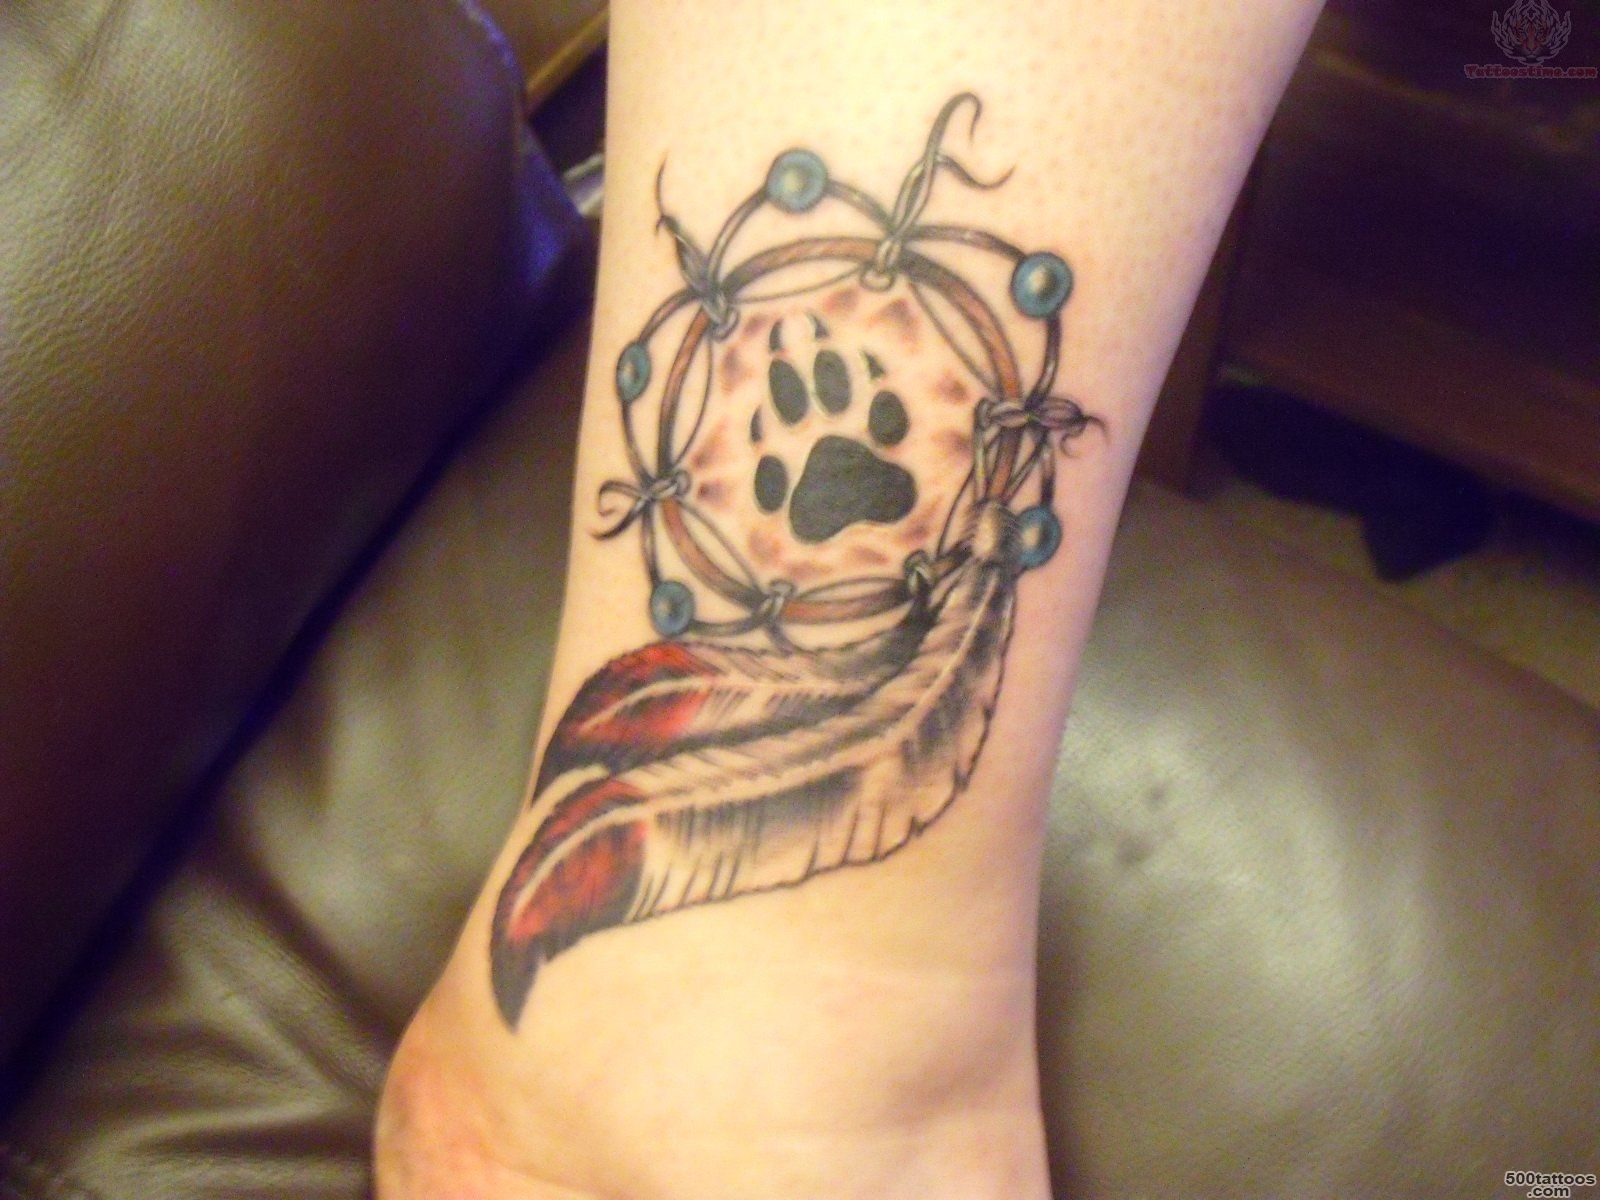 Twin Dream Catcher Tattoos On Wrist   Tattoes Idea 2015  2016_6